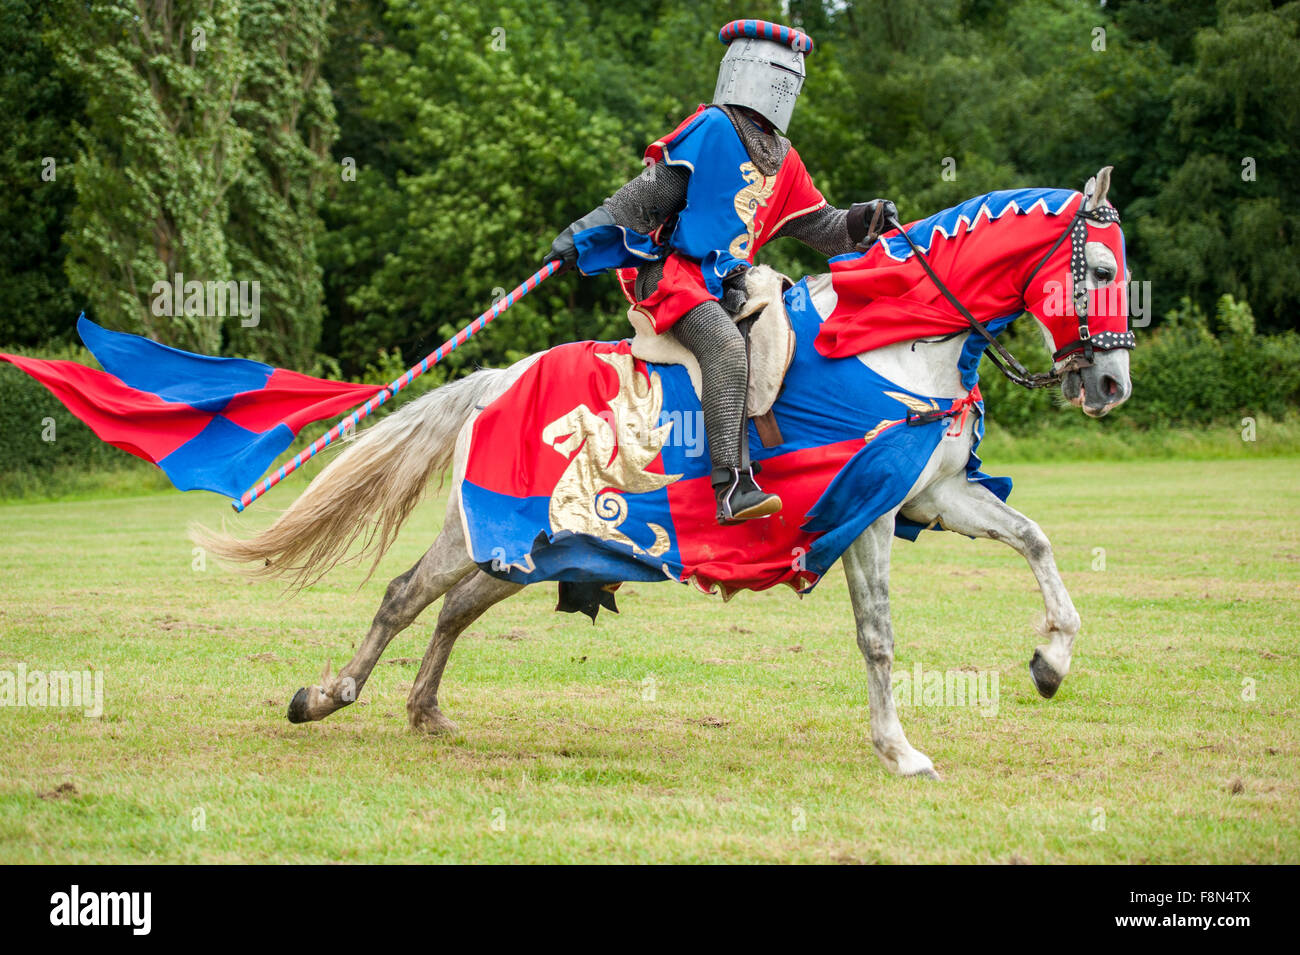 Chevalier médiéval sur un cheval avec le drapeau Banque D'Images